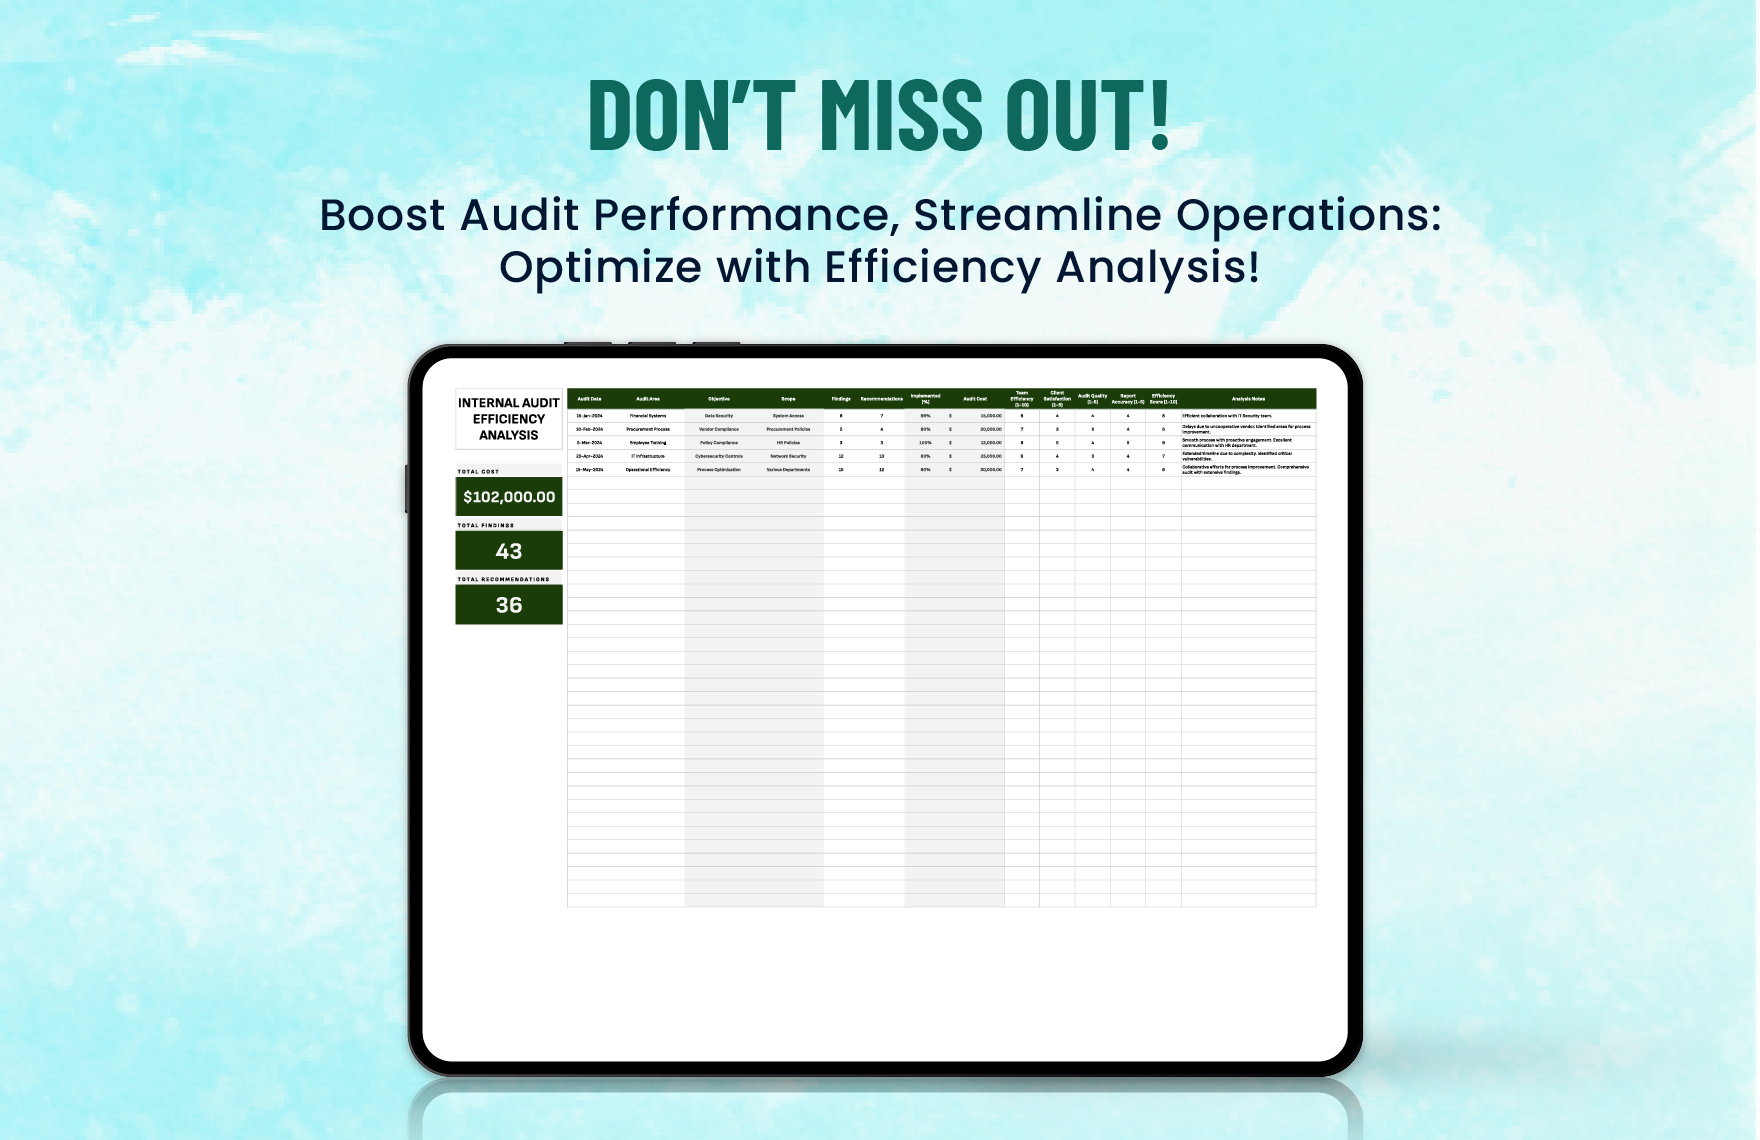 Internal Audit Efficiency Analysis Template